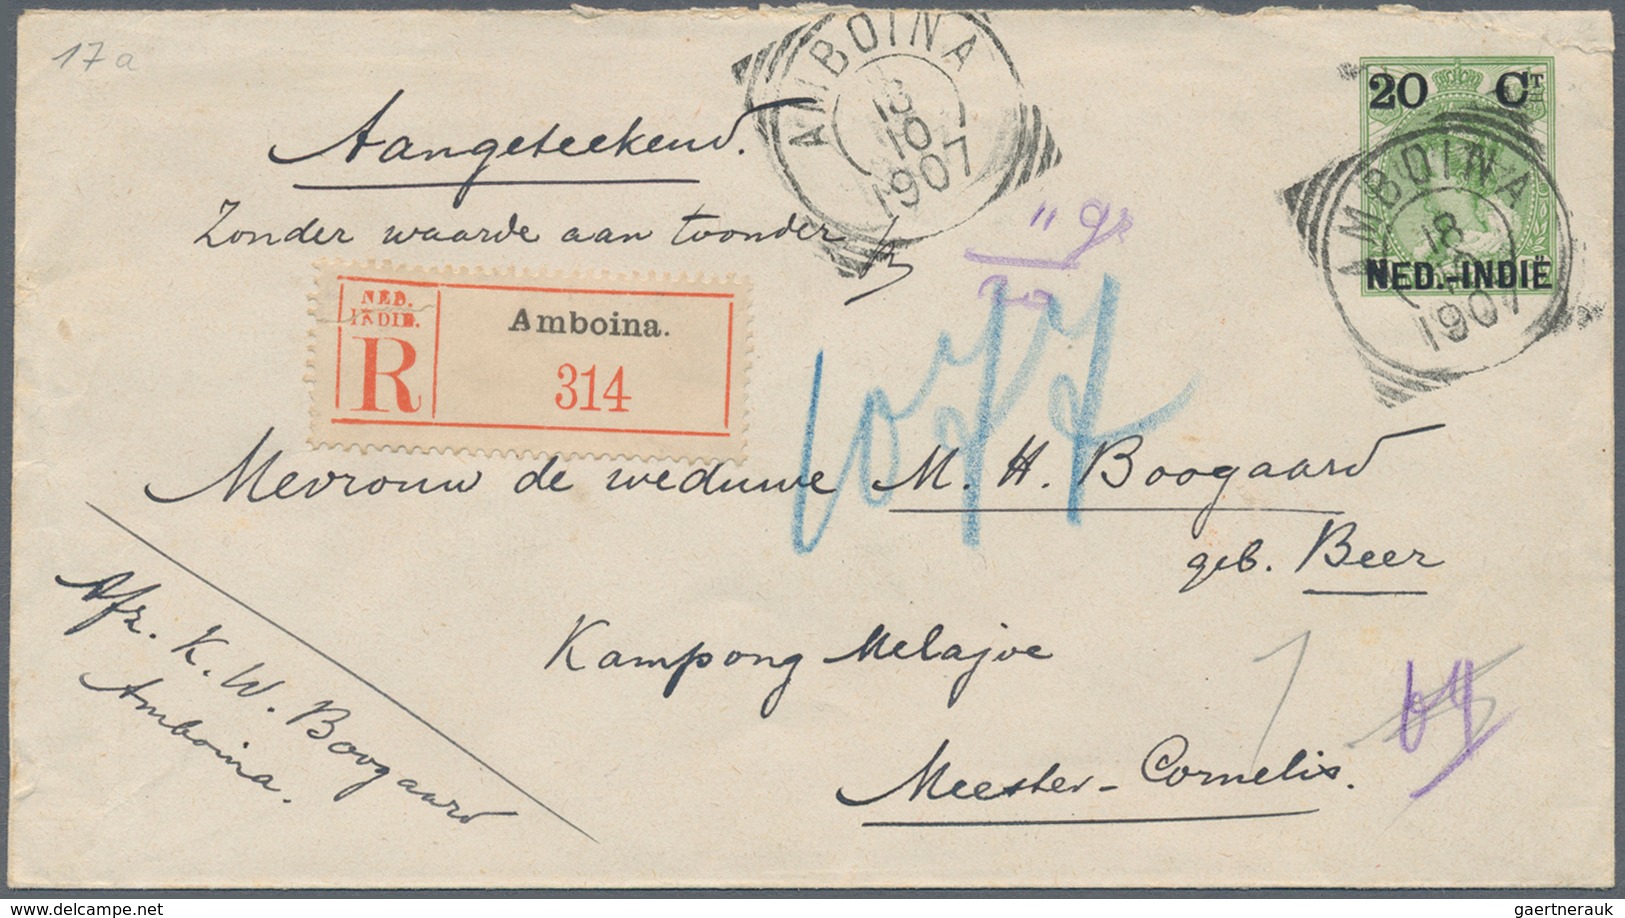 Niederländisch-Indien: 1906, Stationery Envelope 20 C. Canc. "AMBOINA 18 10 1907" Registered Inland - Nederlands-Indië